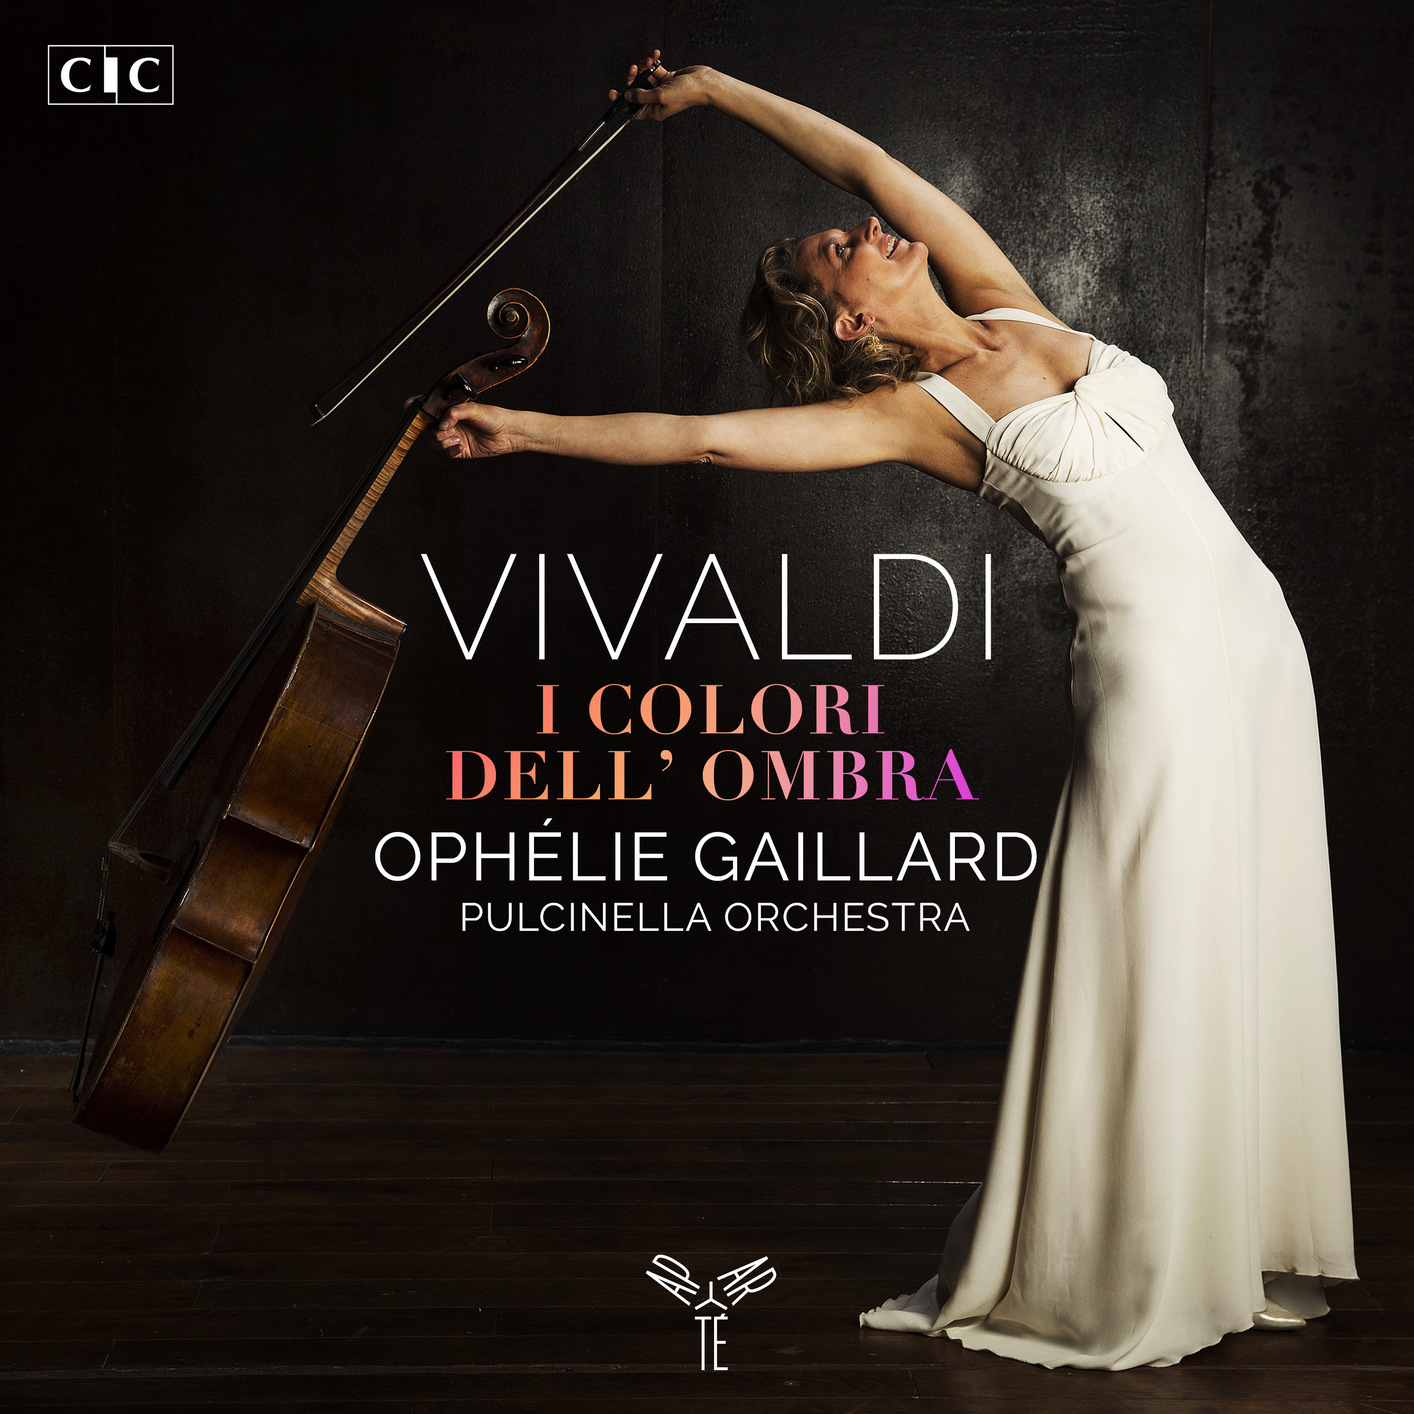 Ophelie Gaillard and Pulcinella Orchestra - Vivaldi: I colori dell’ombra (2020) [FLAC 24bit/96kHz]